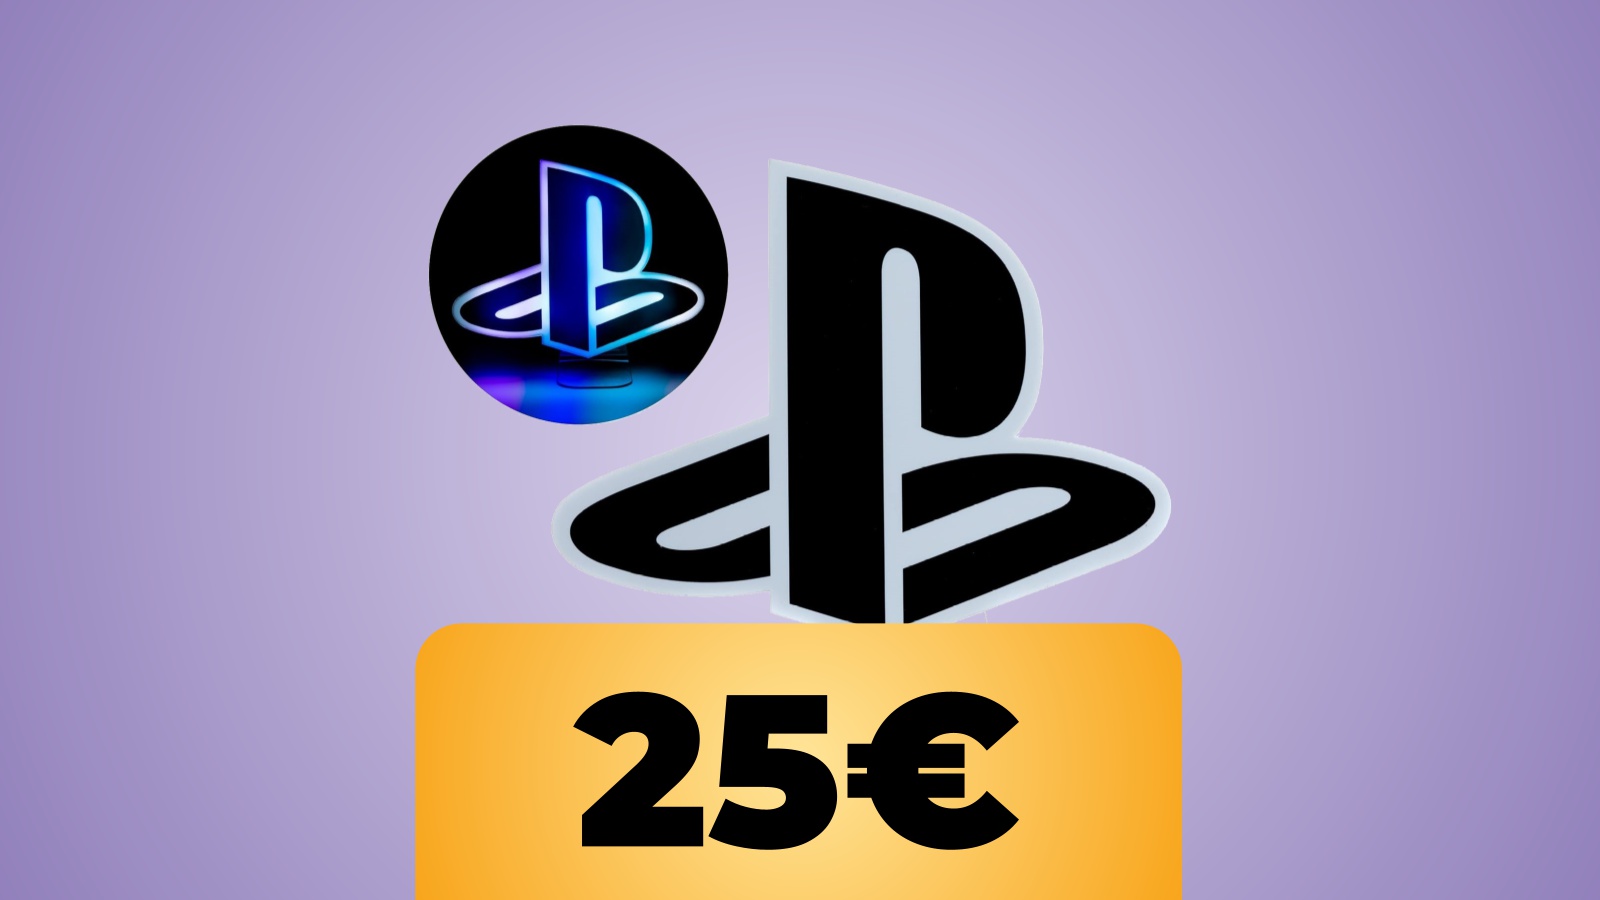 Luce decorativa a forma di logo PlayStation in sconto su Amazon: la perfetta idea regalo